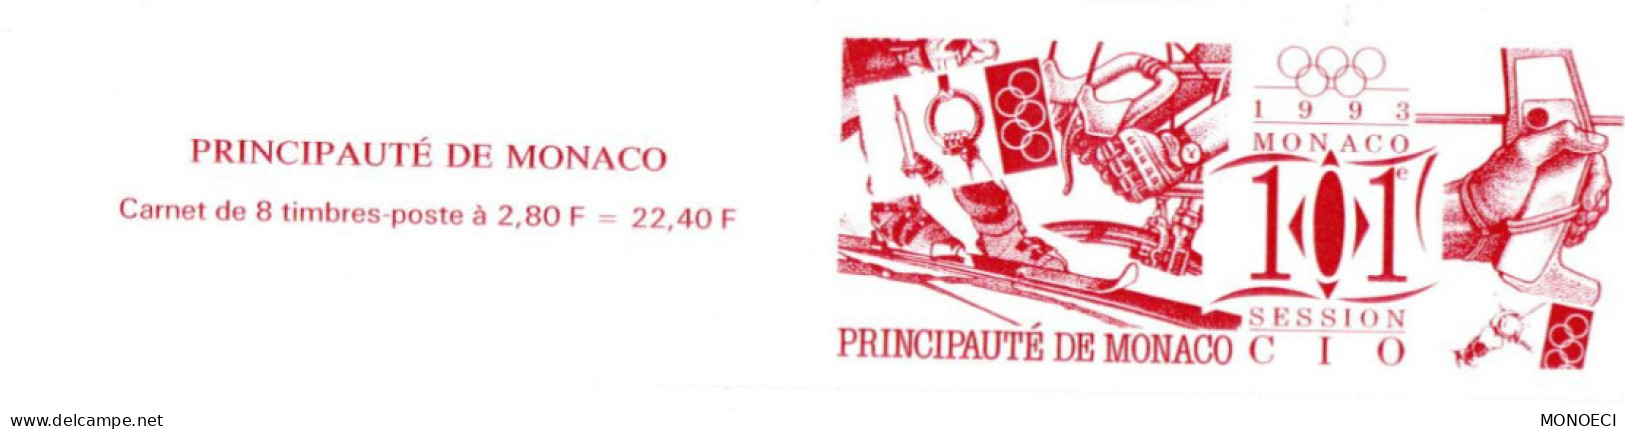 MONACO --  Monégasque -- Carnet -- Timbres 2,80 Francs 1993 -- 101e Session Du Comité Olympique International - Carnets